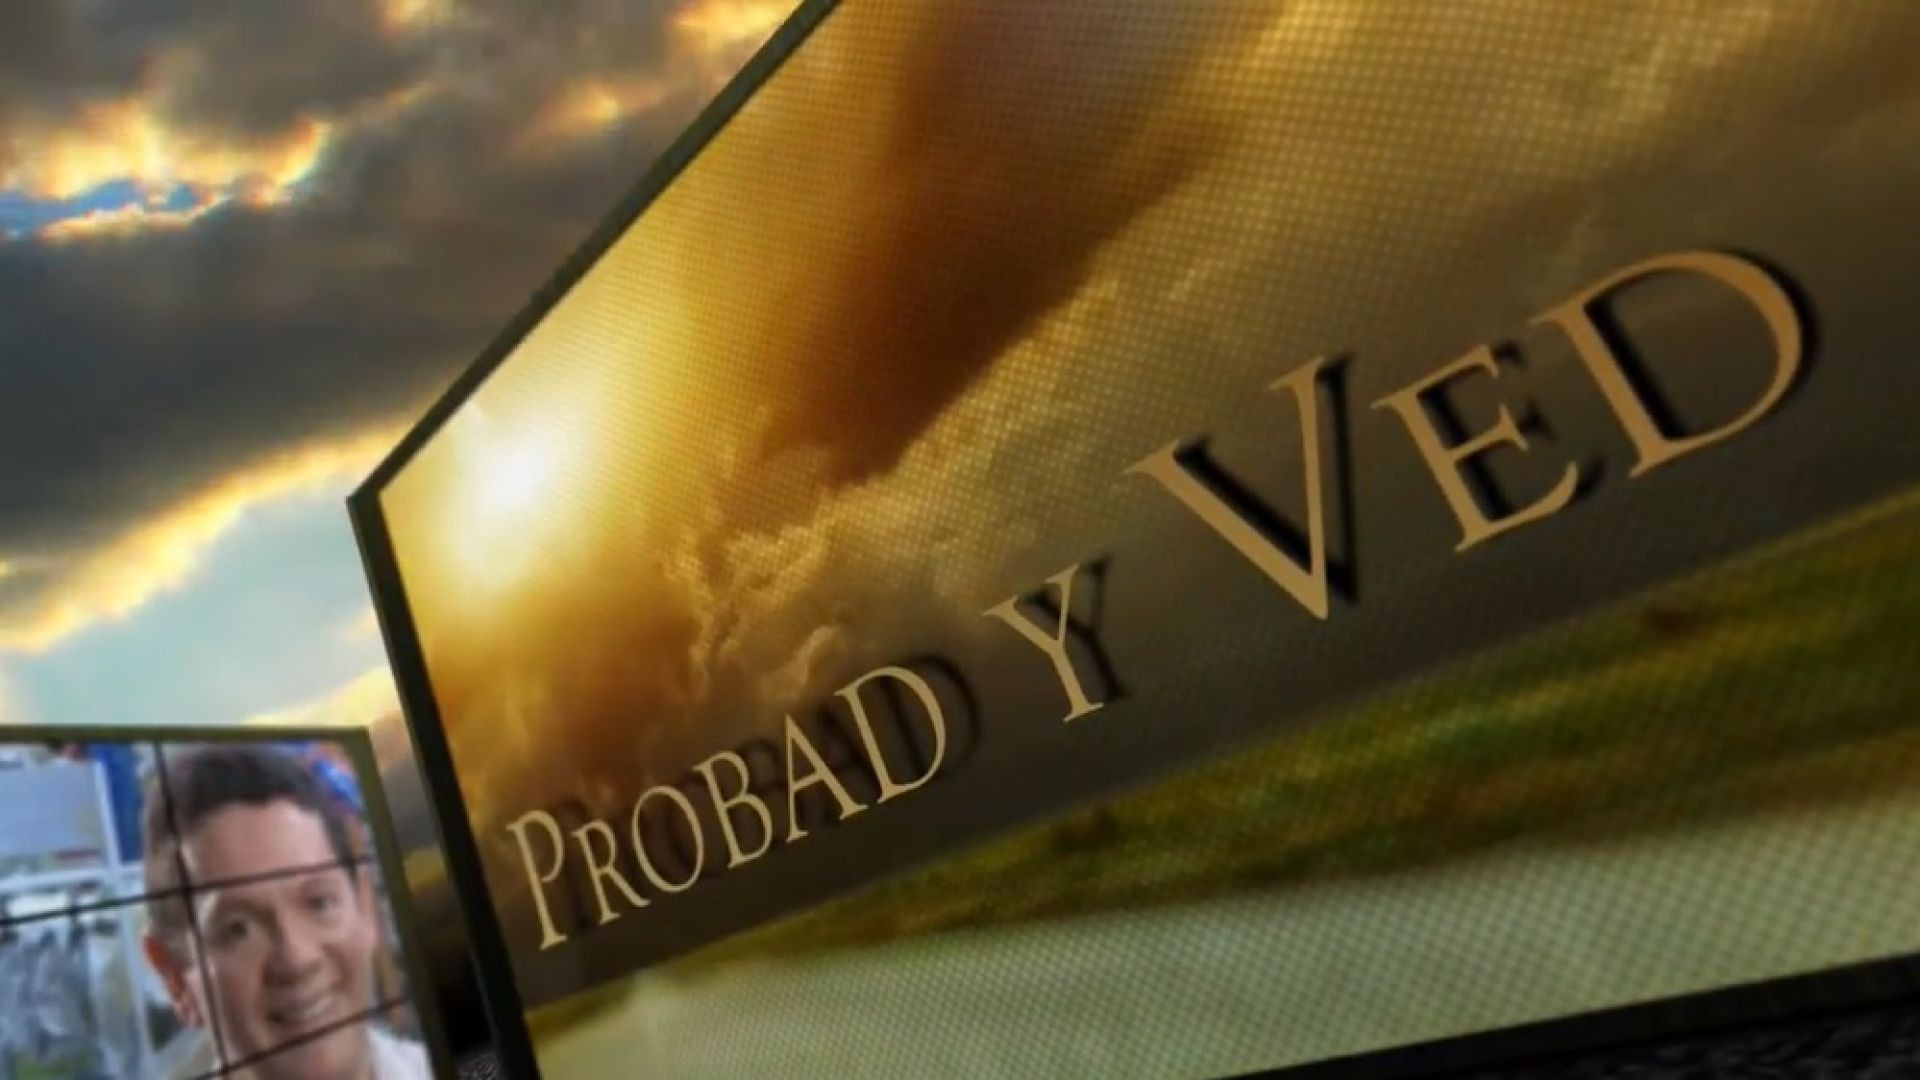 Probad y Ved 2013 - El ejemplo del sábado - 30/Mar